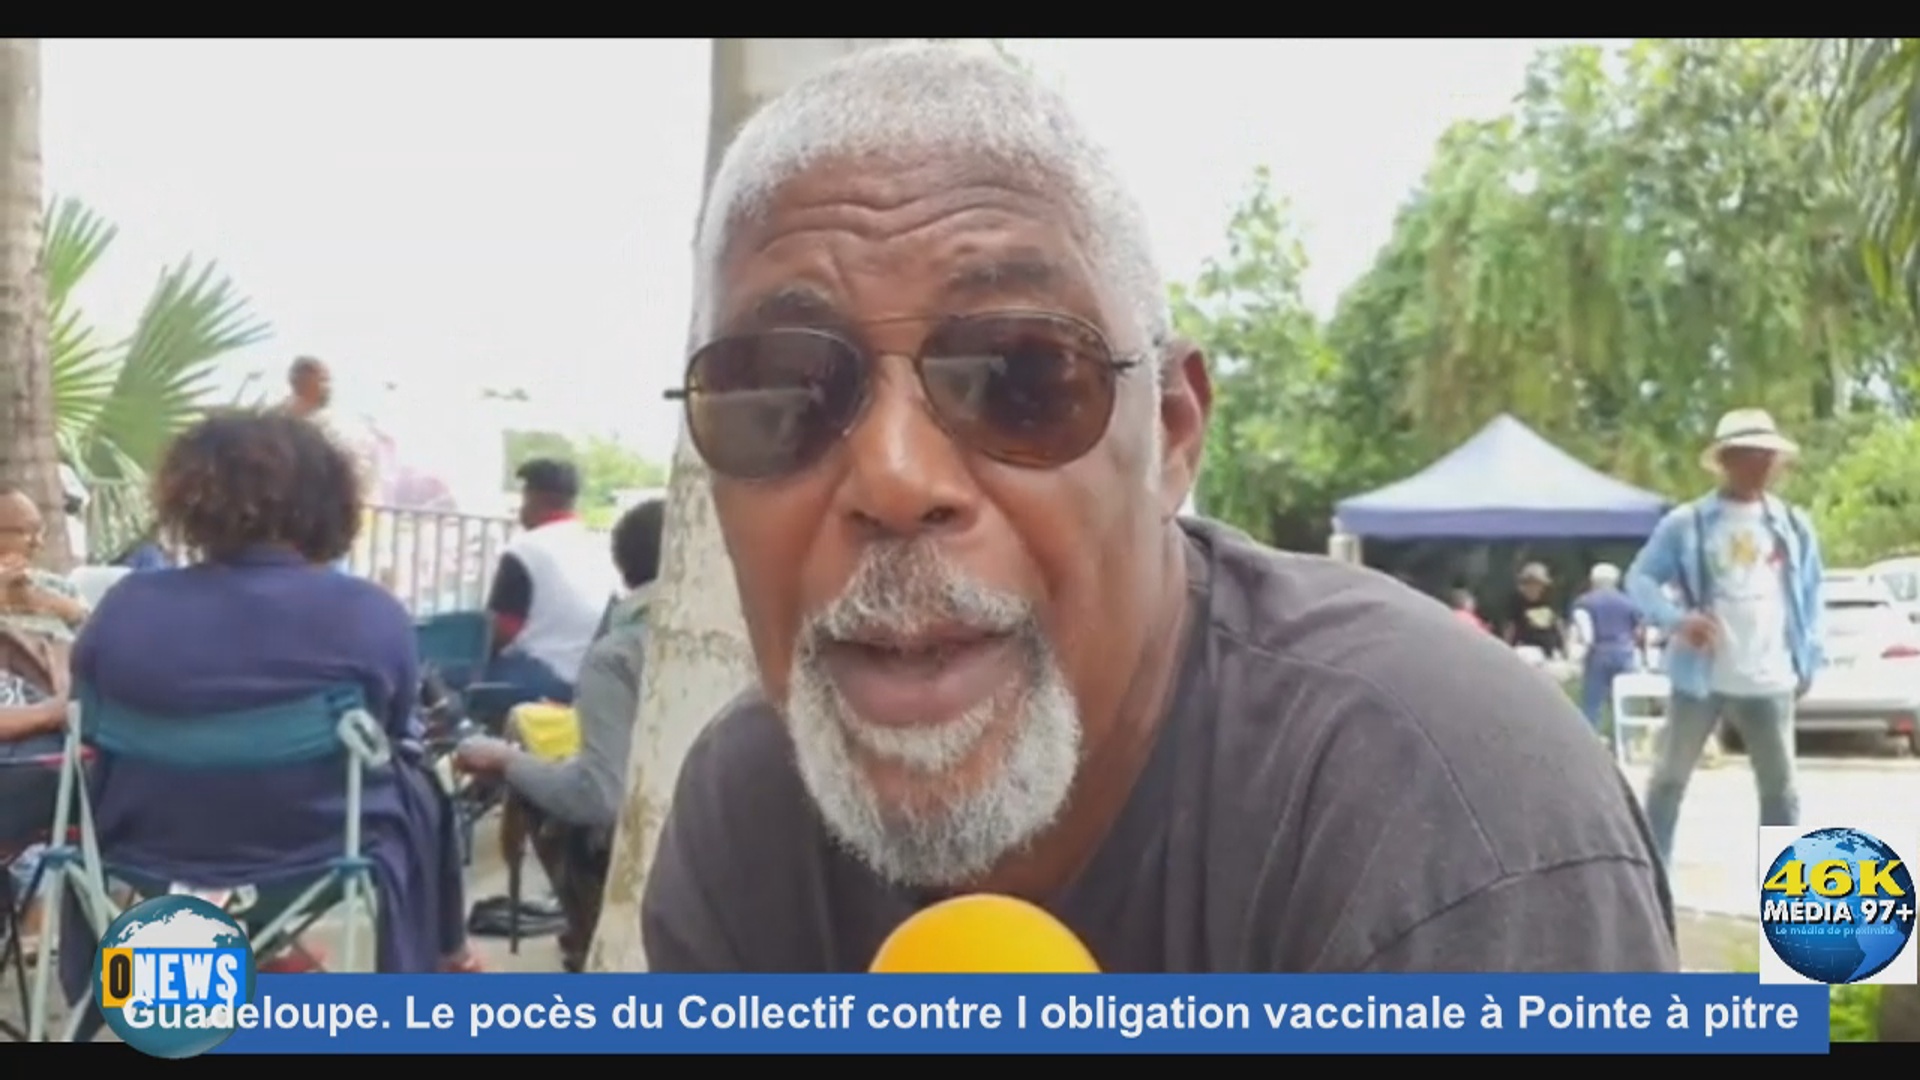 [Vidéo] Guadeloupe Le procès du Collectif contre l obligation vaccinale à Pointe à pitre